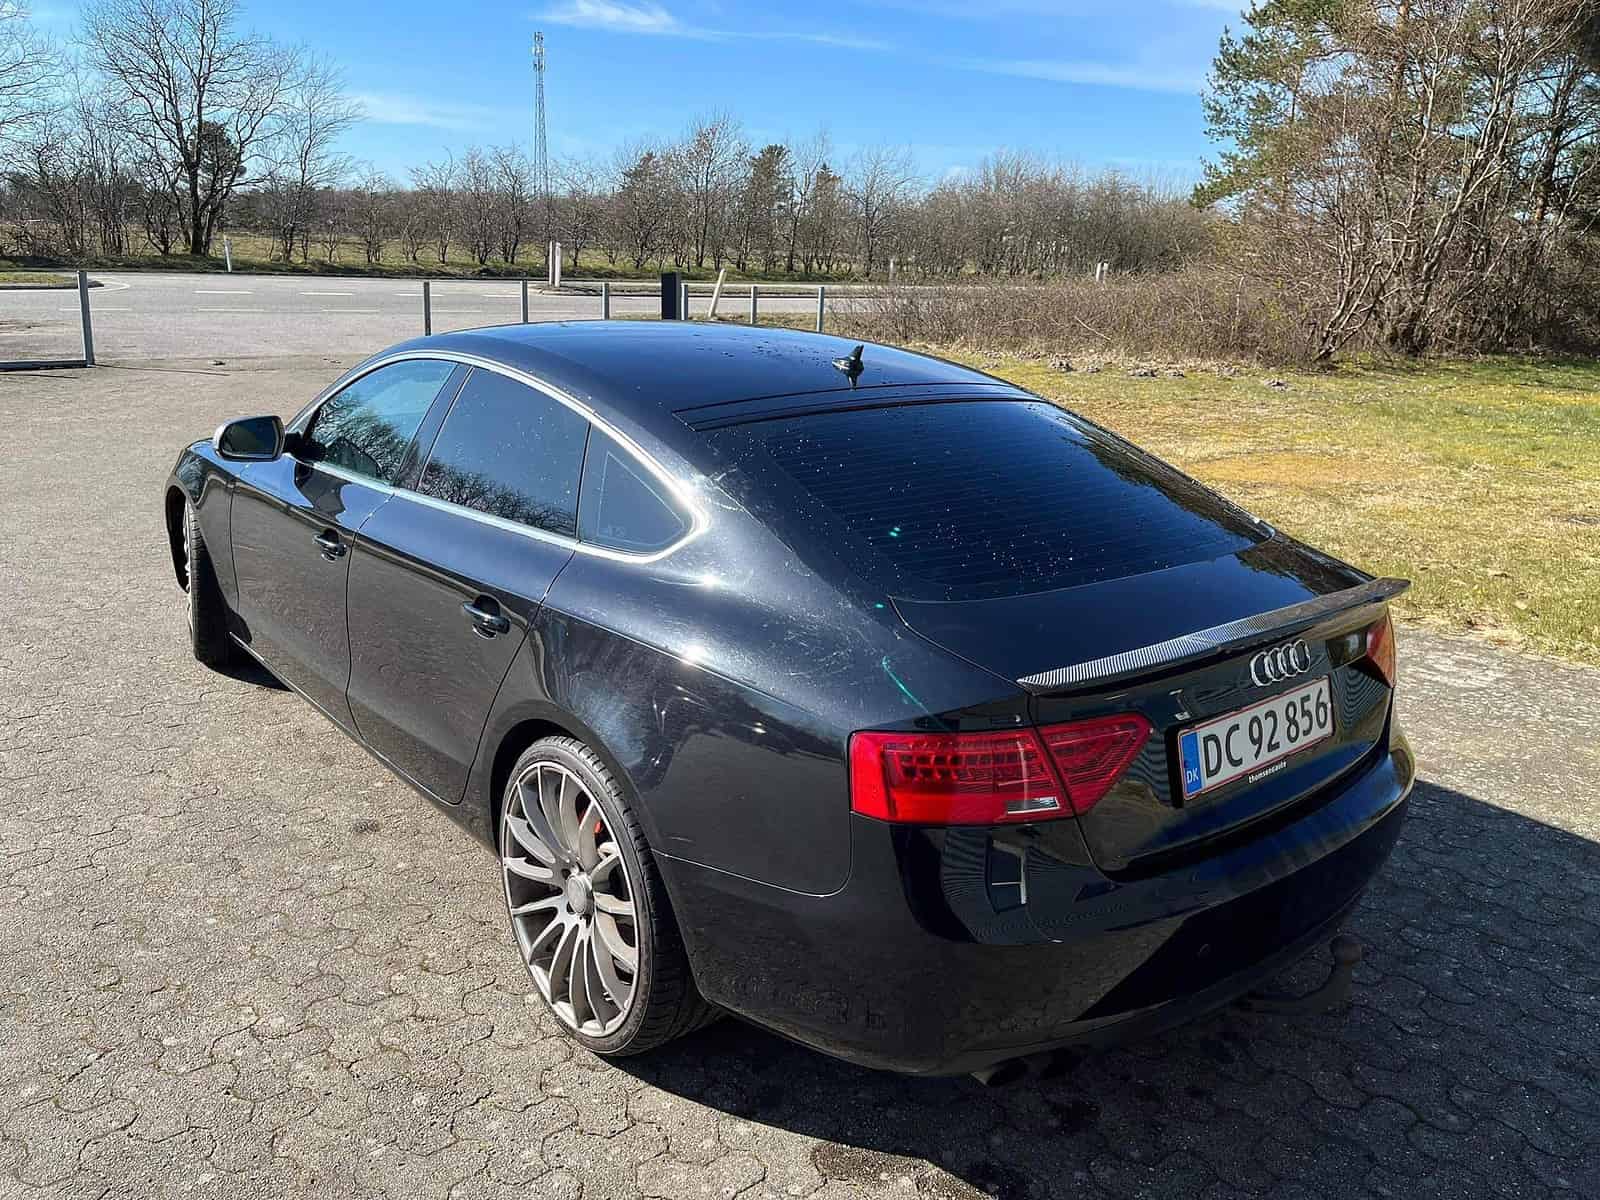 EFTERLYST: Hjælp politiet med at finde stjålne Audi- og Volkswagen-biler Audi A5 Sportback